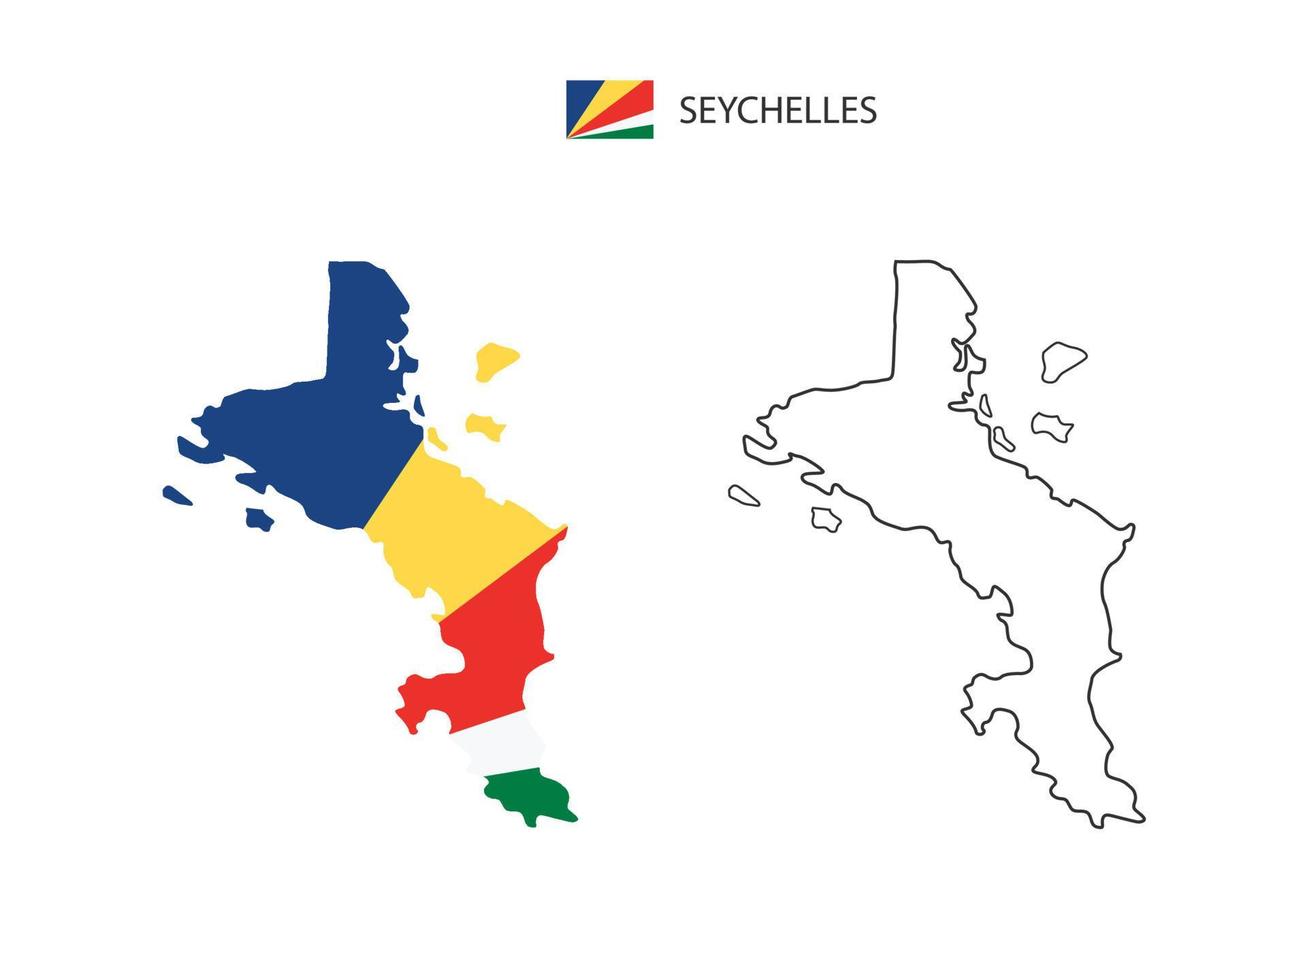 seychelles carte ville vecteur divisé par style de simplicité de contour. ont 2 versions, la version en ligne fine noire et la couleur de la version du drapeau du pays. les deux cartes étaient sur fond blanc.